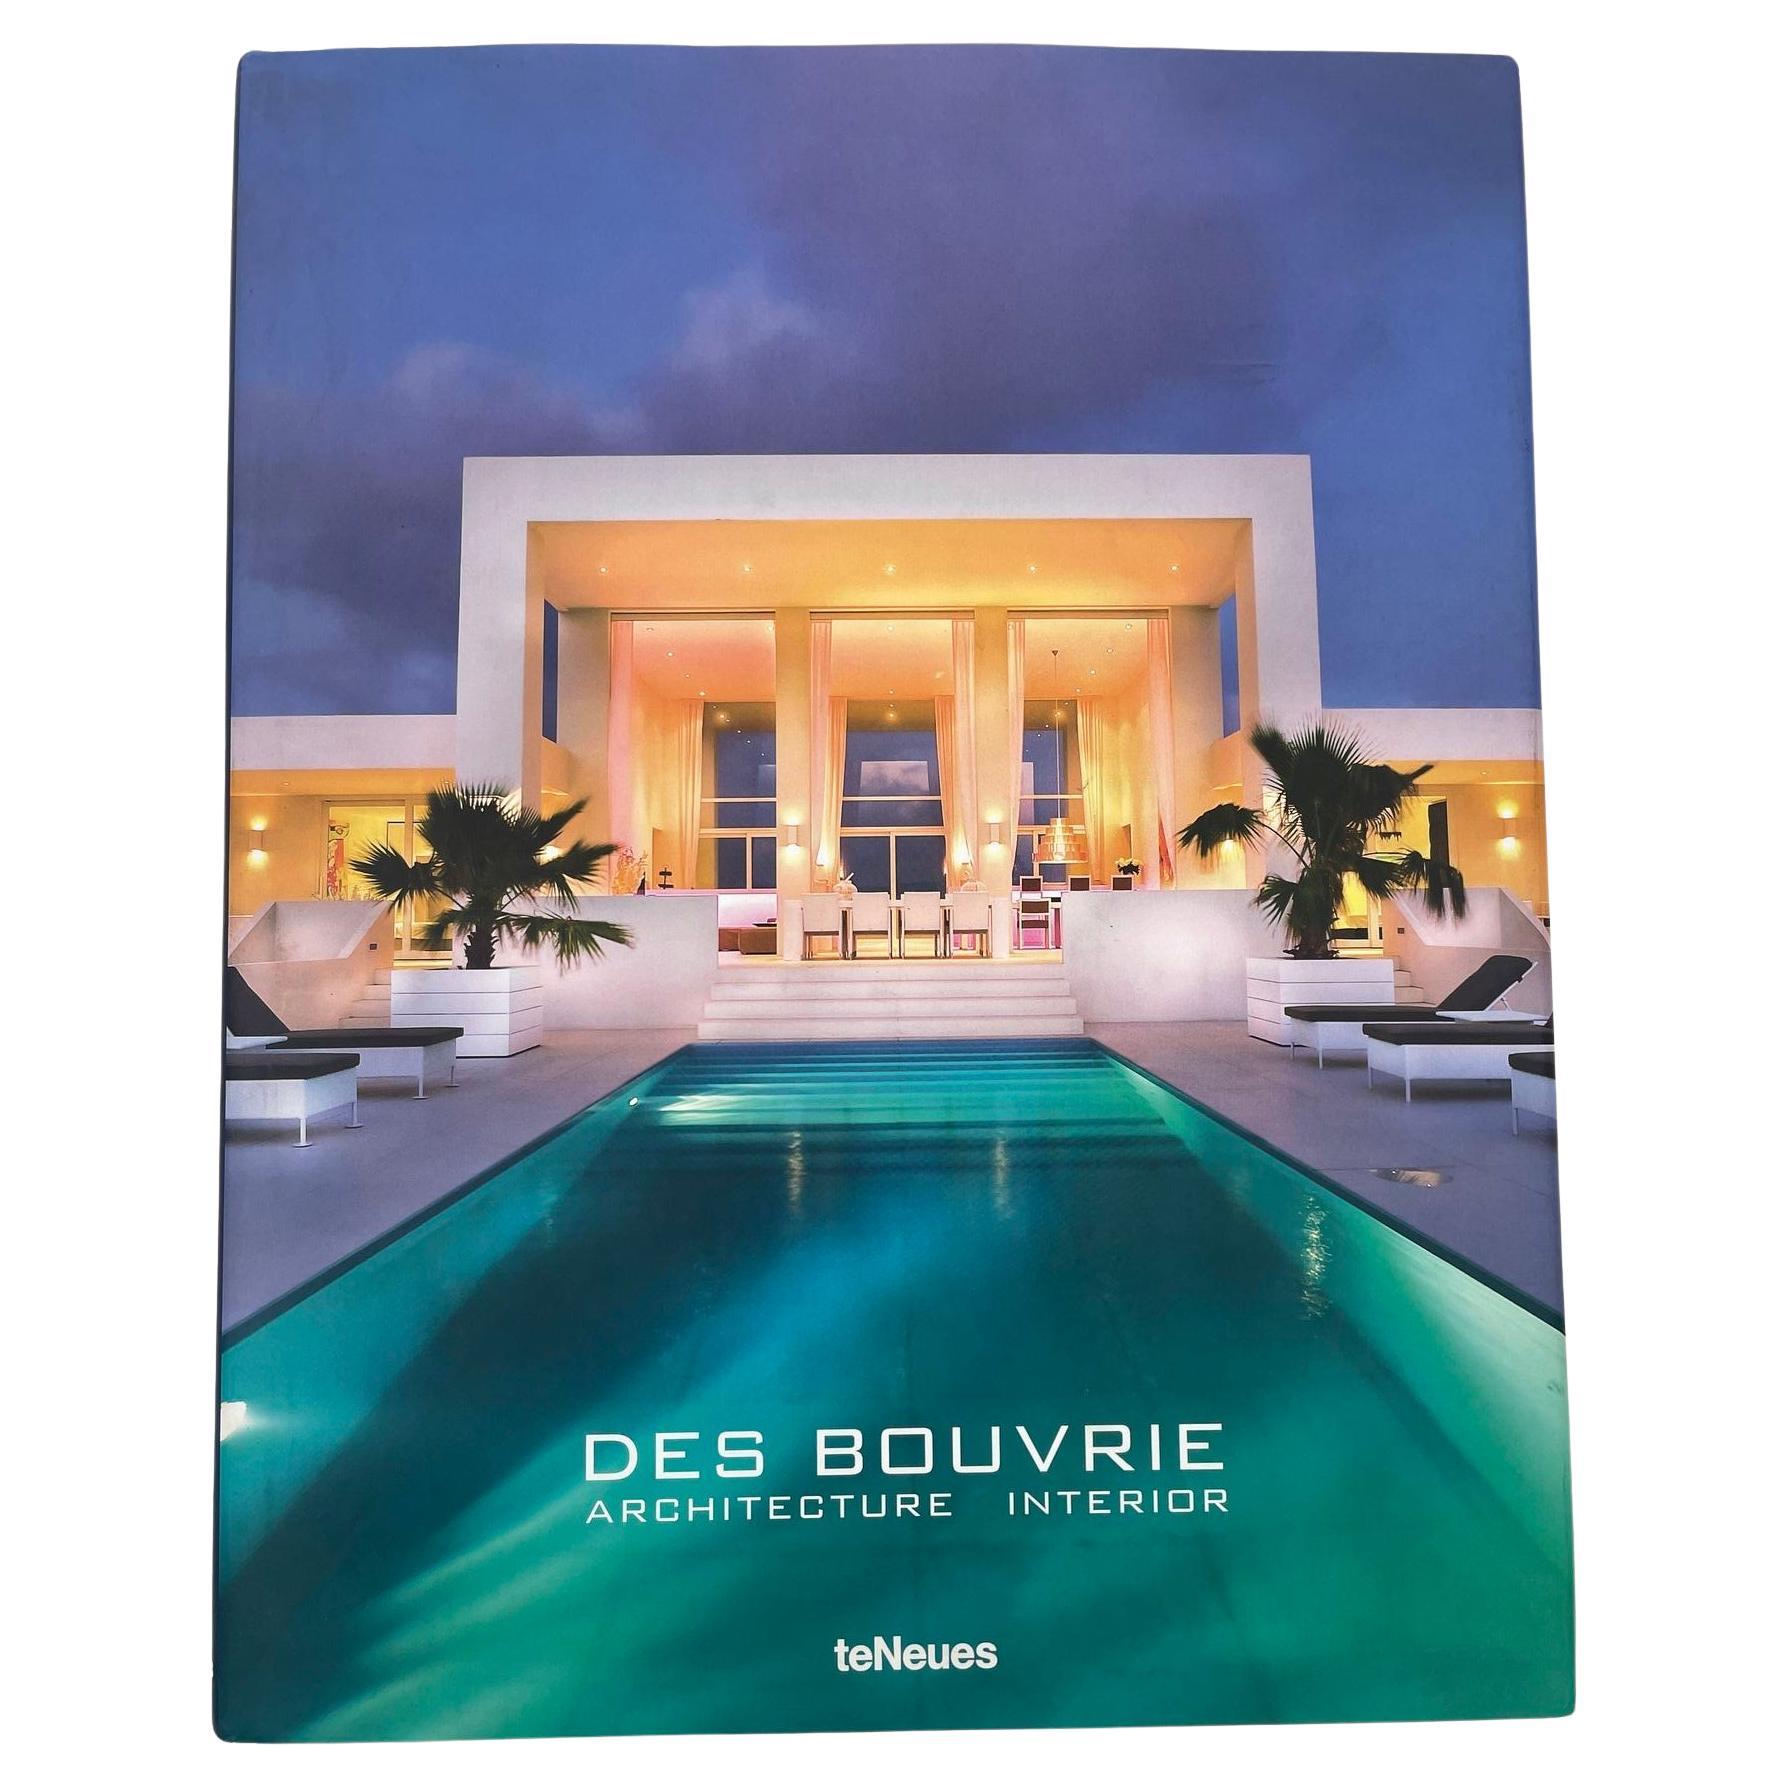 Des Bouvrie, Architektur-Interieur von Jan und Monique des Bouvrie 2015